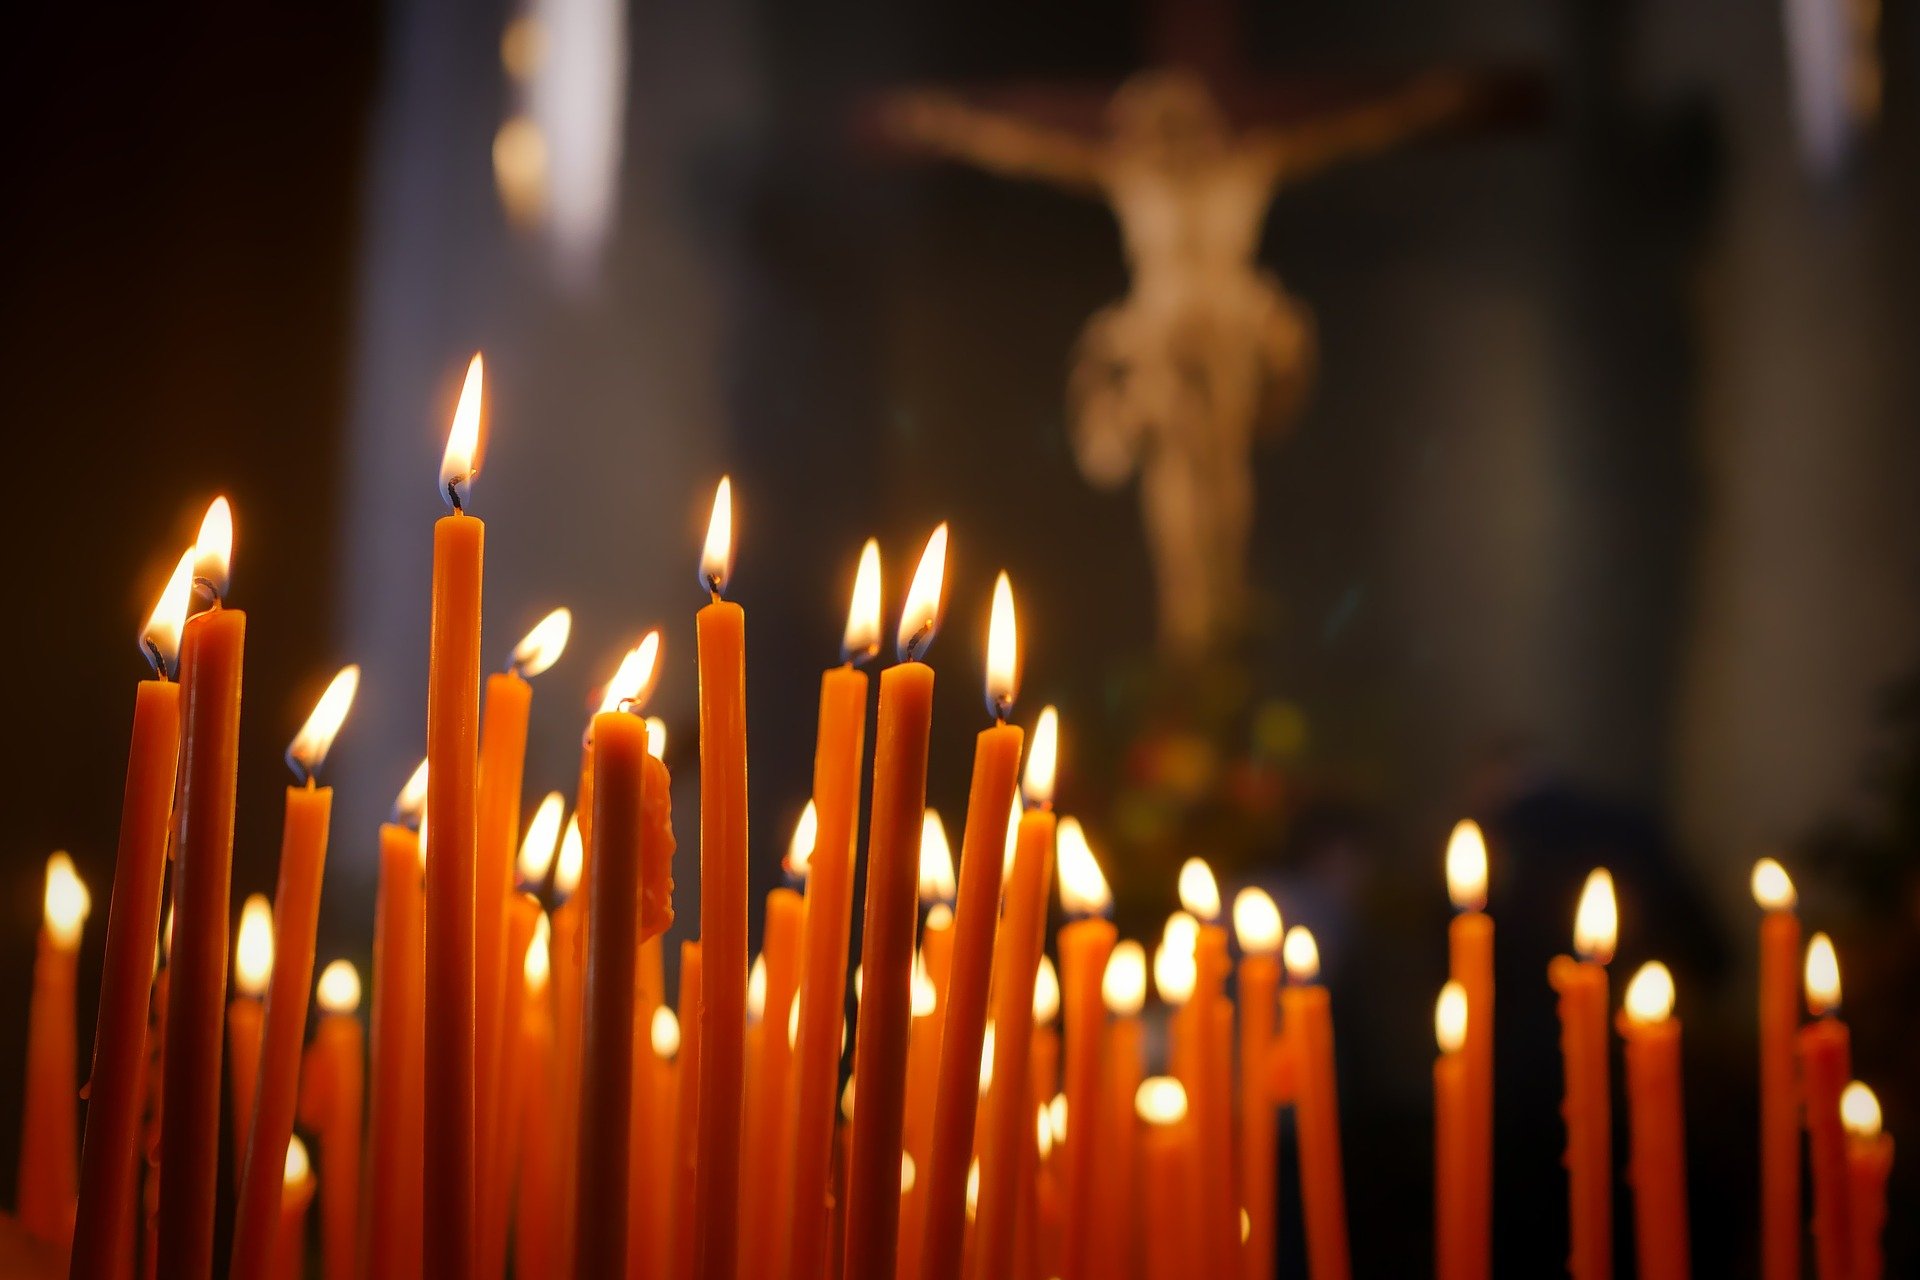 prier bougies.jpg?resize=1200,630 - Persécution: plus de 3000 chrétiens sont tués dans le monde chaque année